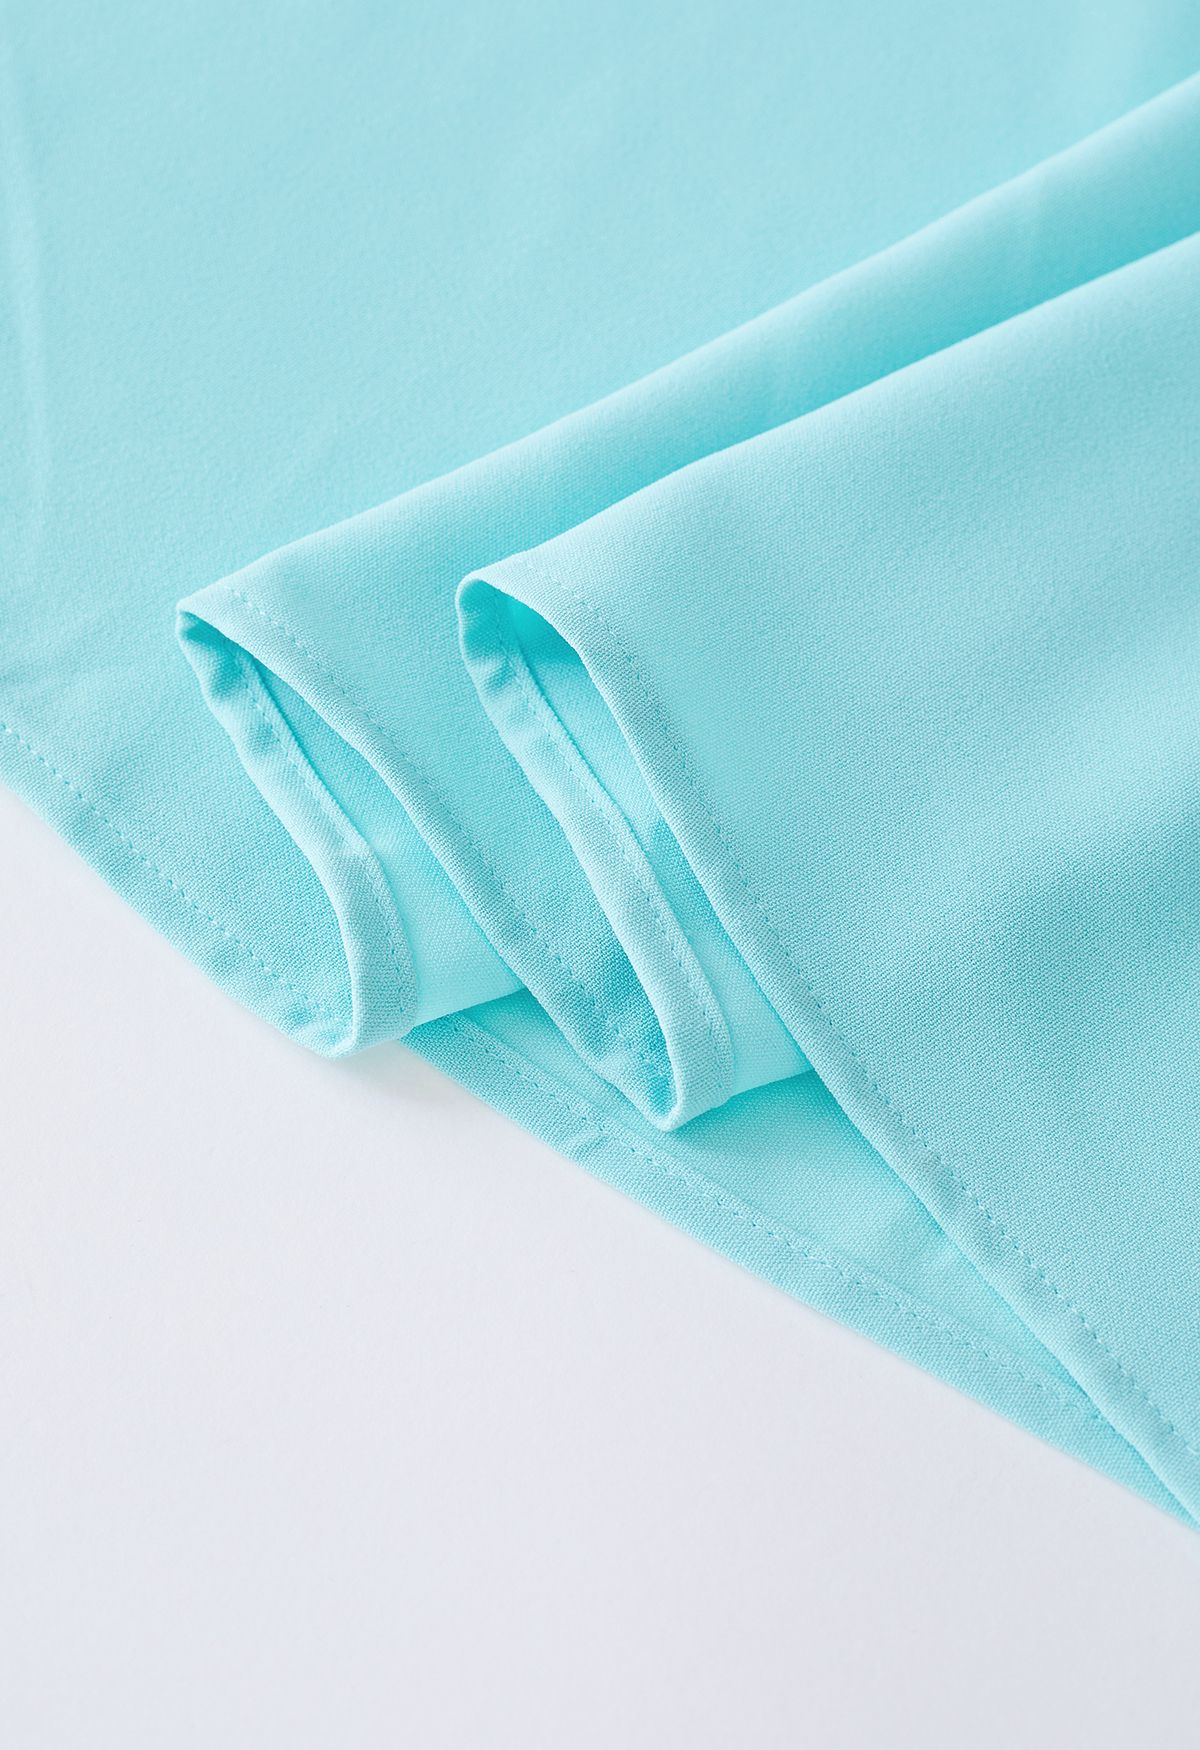 Twist Cutout Shirred Cami Maxi Dress in Mint